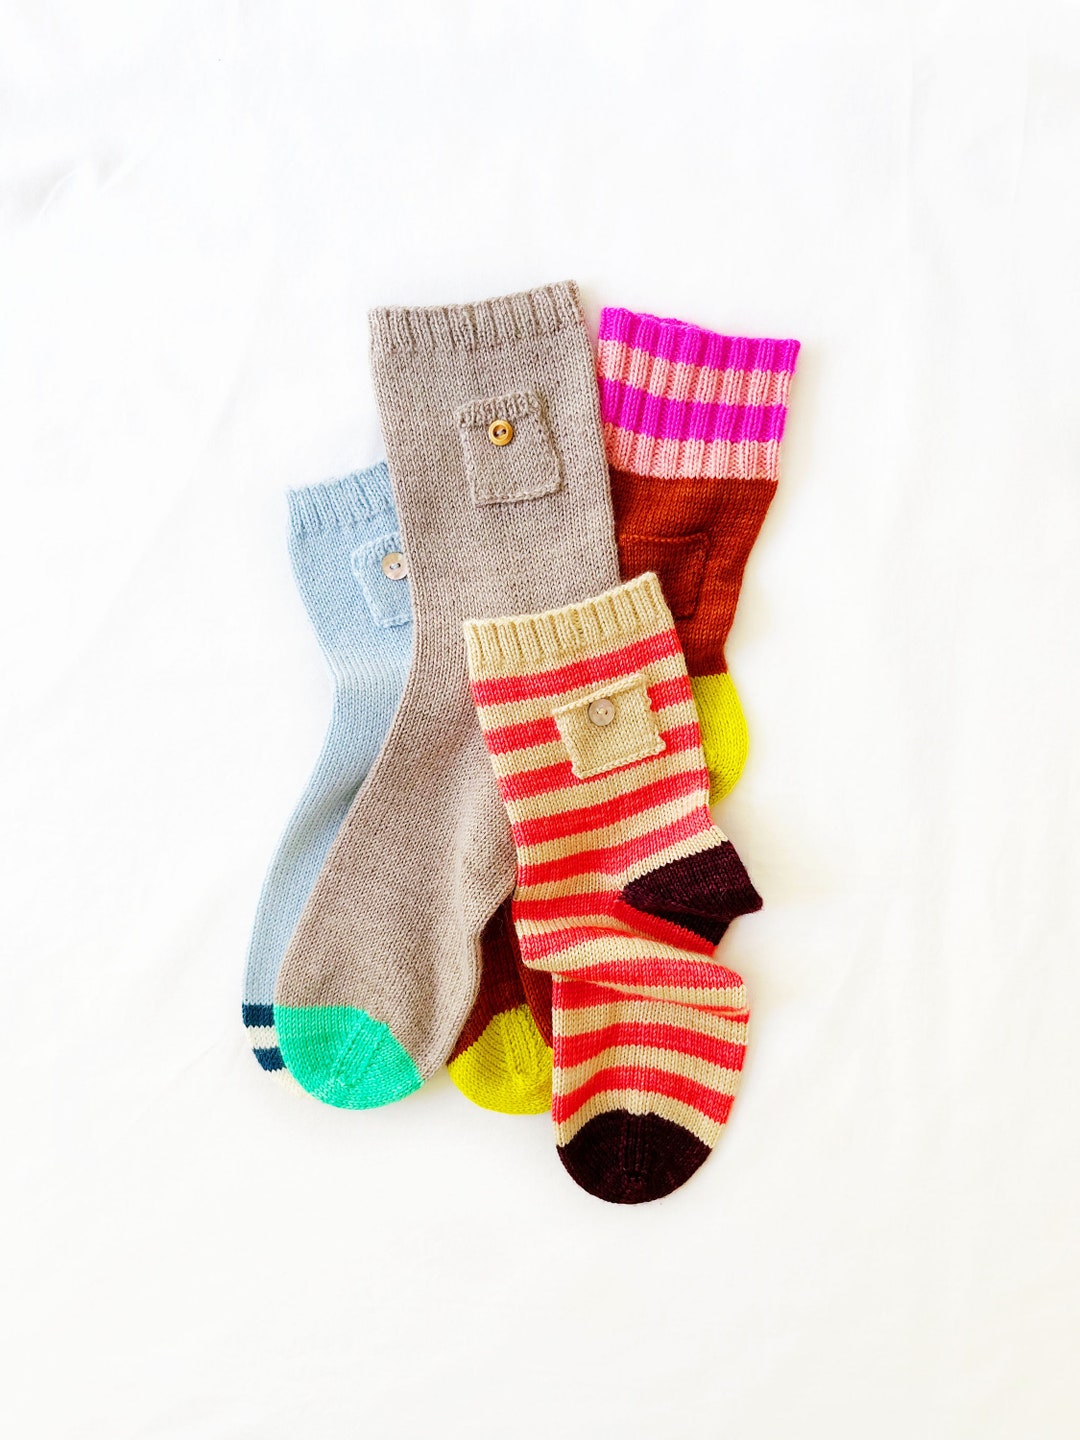 Pocket Socks Beginner Friendly Sock Knitting Pattern, Easy Sock ...